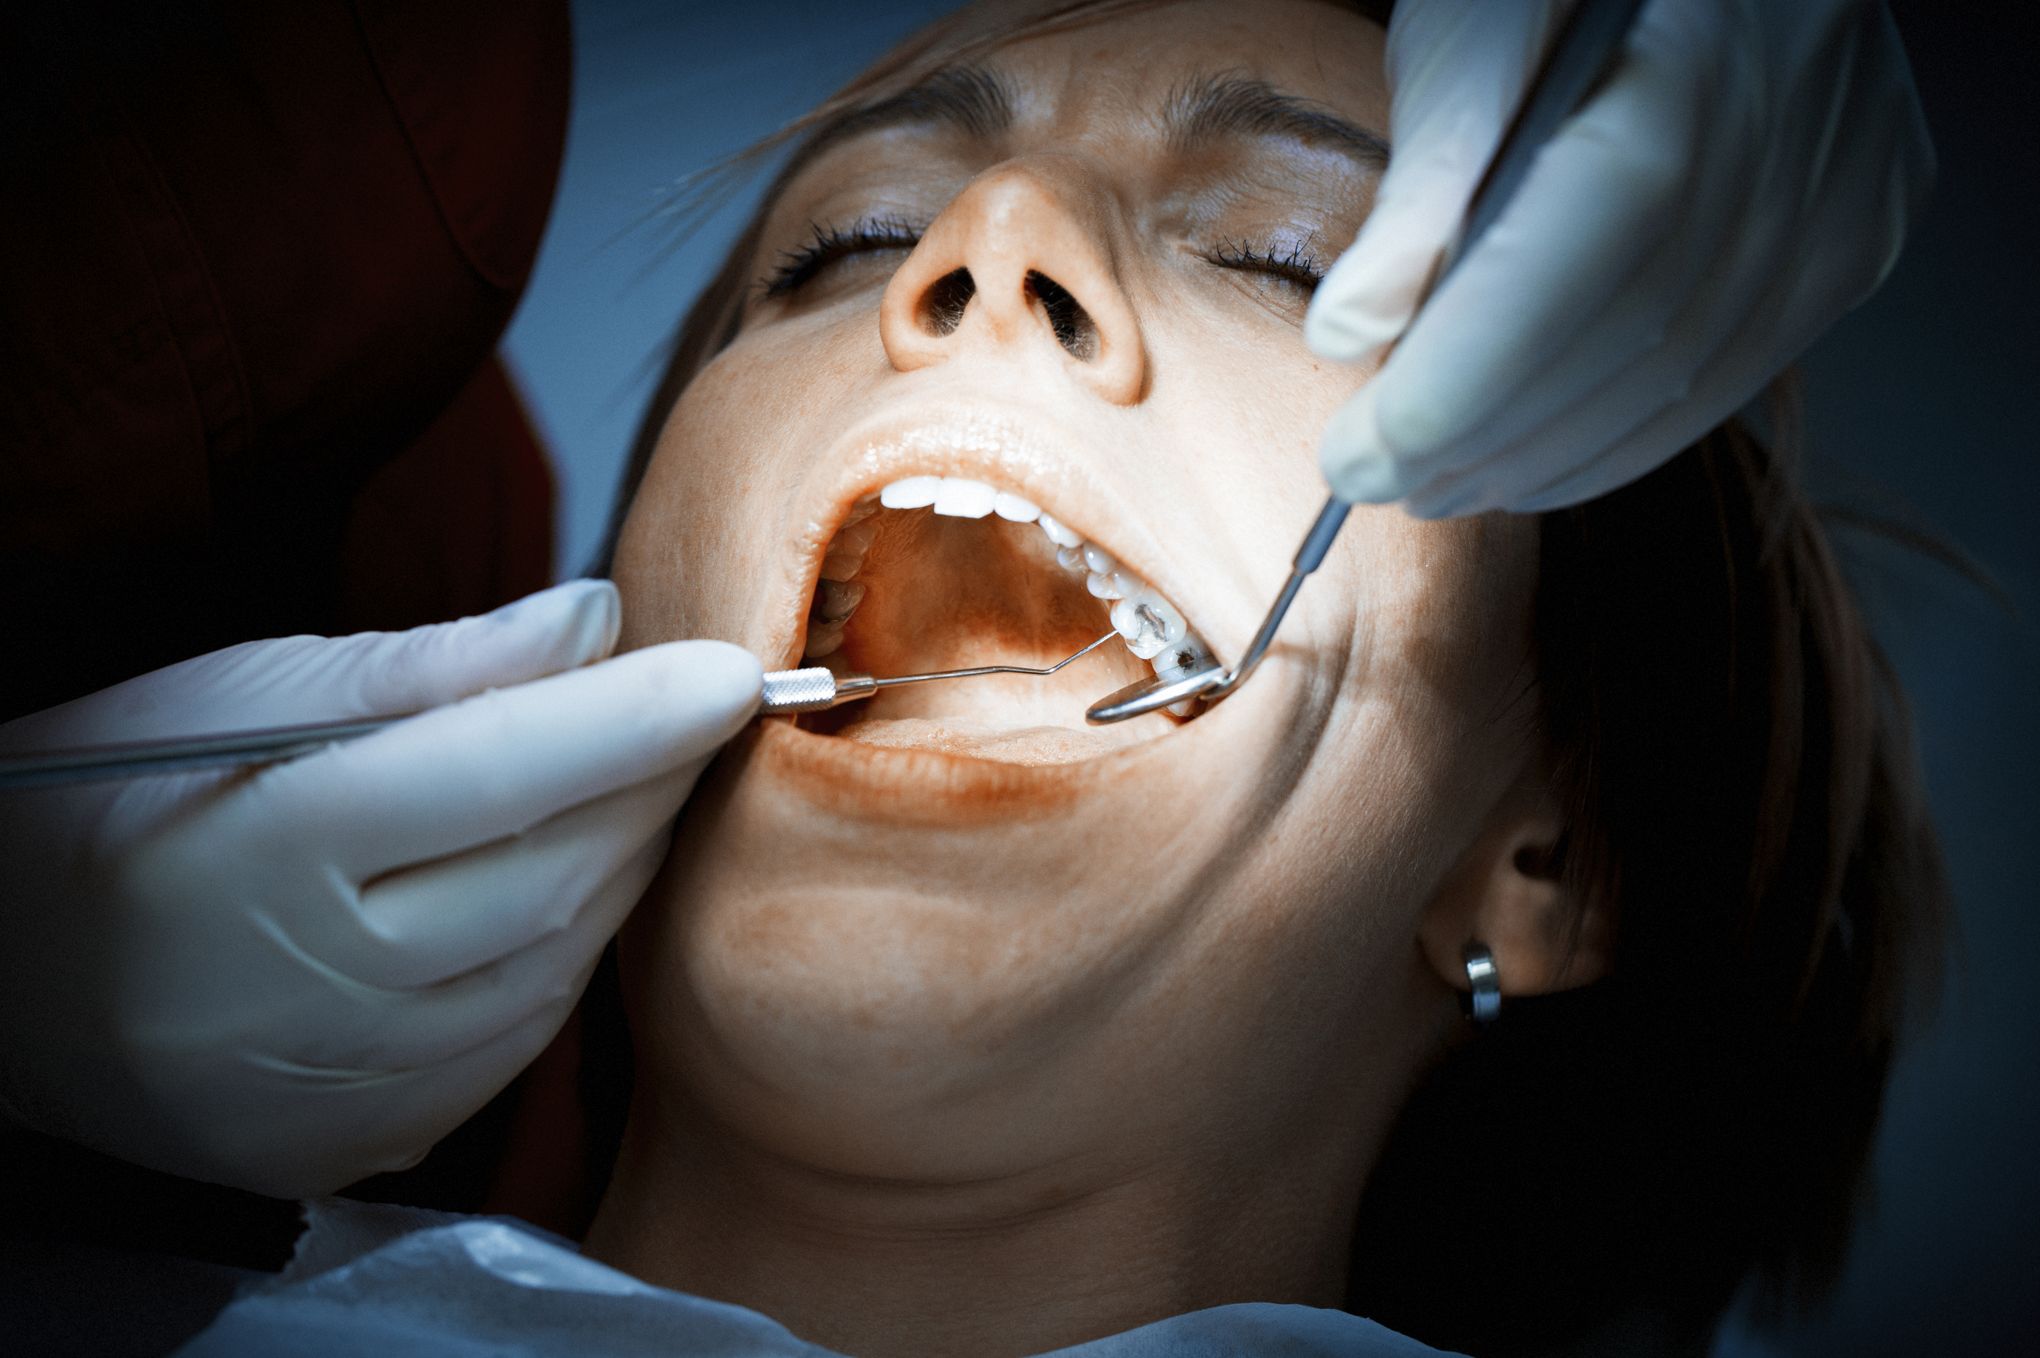 Le mercure du plombage dentaire : dangereux ou pas ?